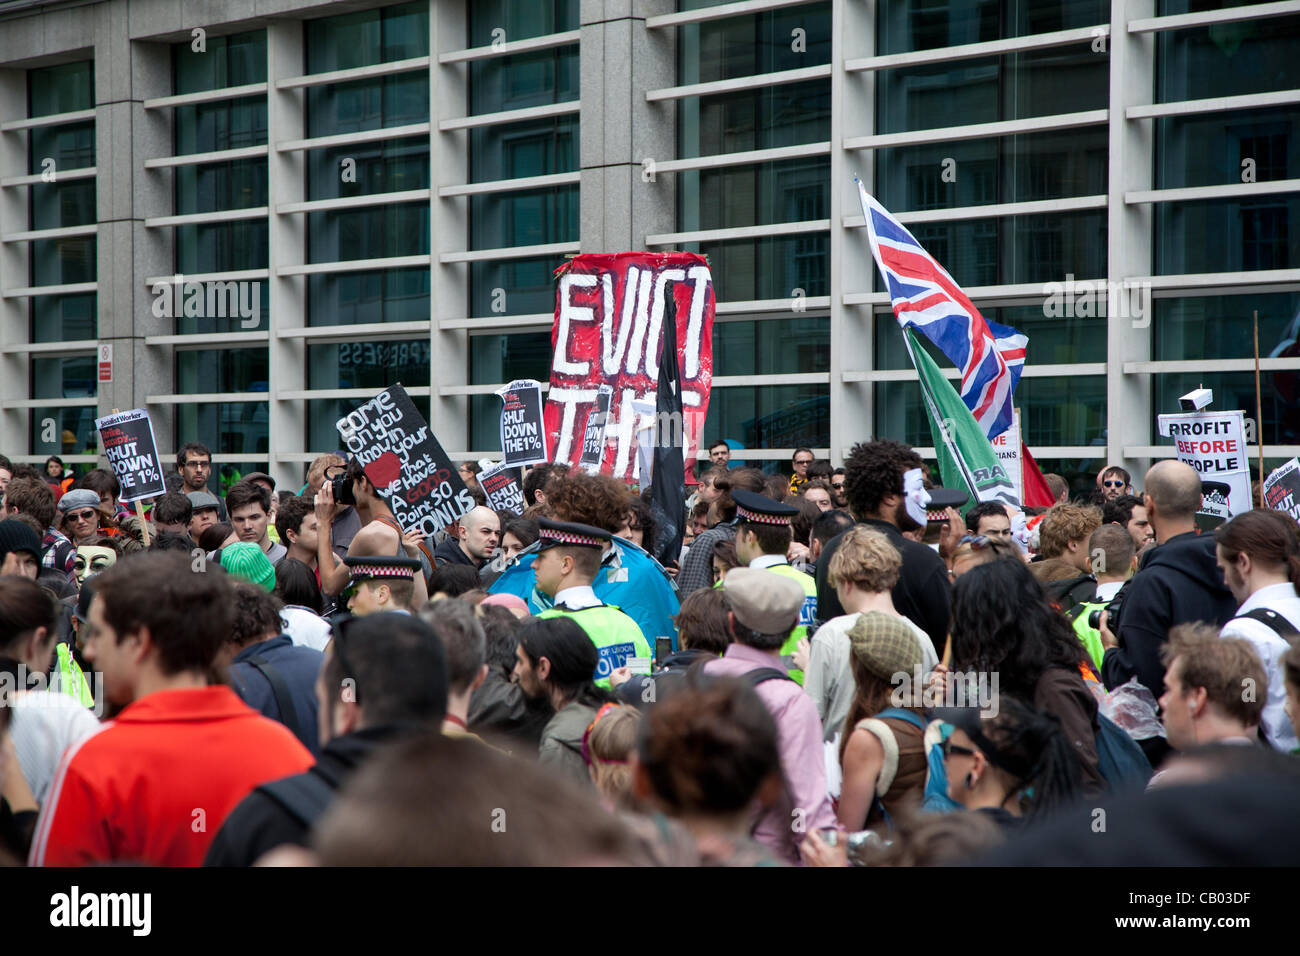 London, UK. 12 Mai 2012 sind Mitglieder der Occupy London Bewegung und anderen Demonstranten versammelten sich in St. Paul vor dem Umzug in die Stadt Ziel nennen sie die "1 %" Institutionen. Stockfoto